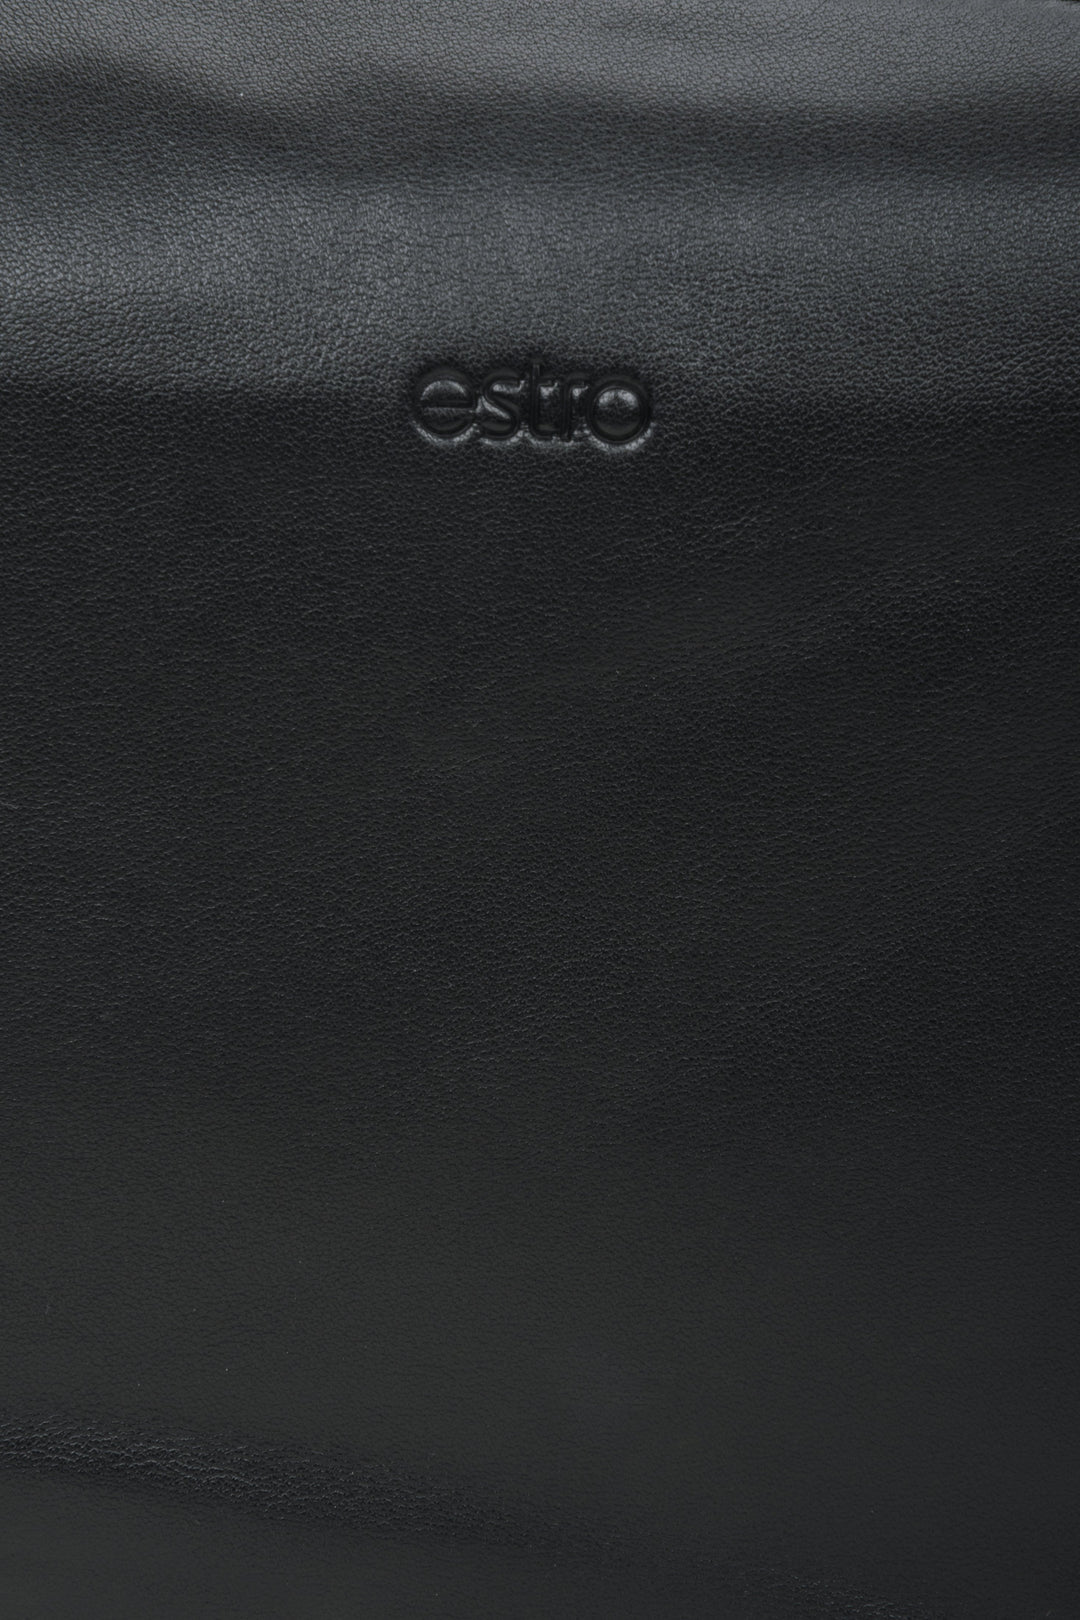 Women's black leather  shoulder bag - close-up on the details.